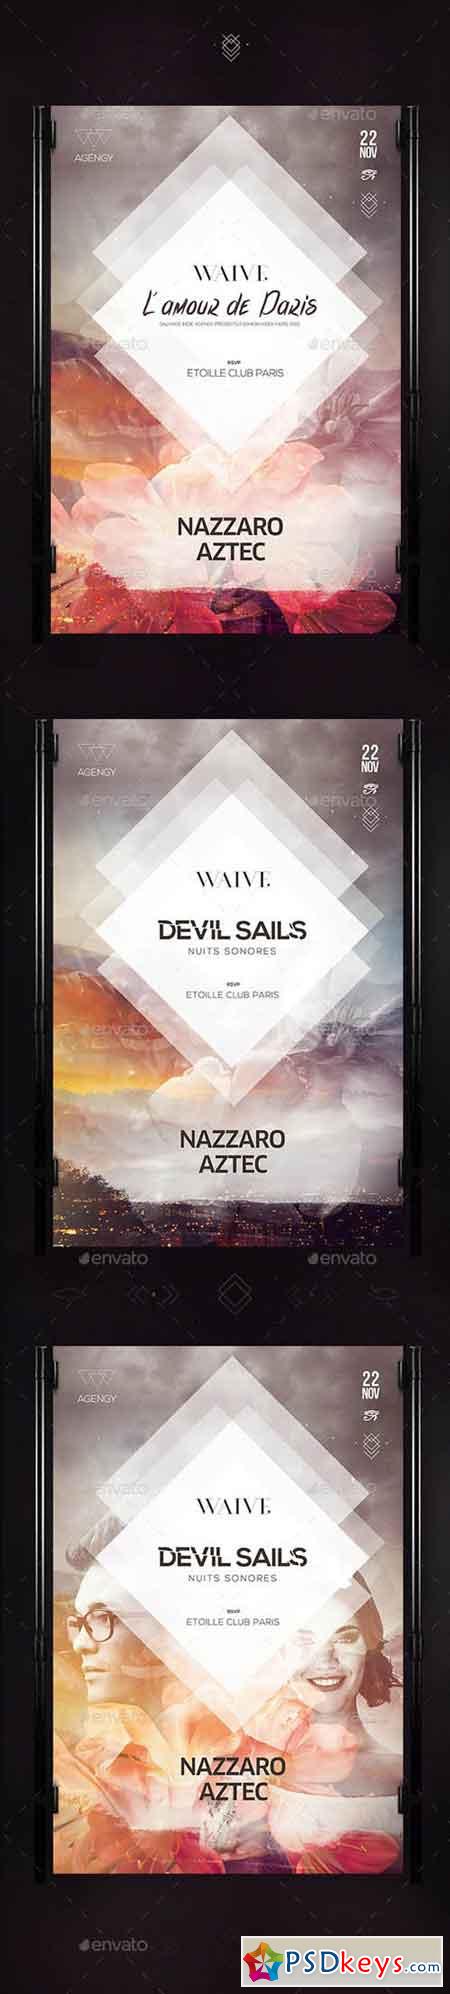 Devil Sails Poster 13279930